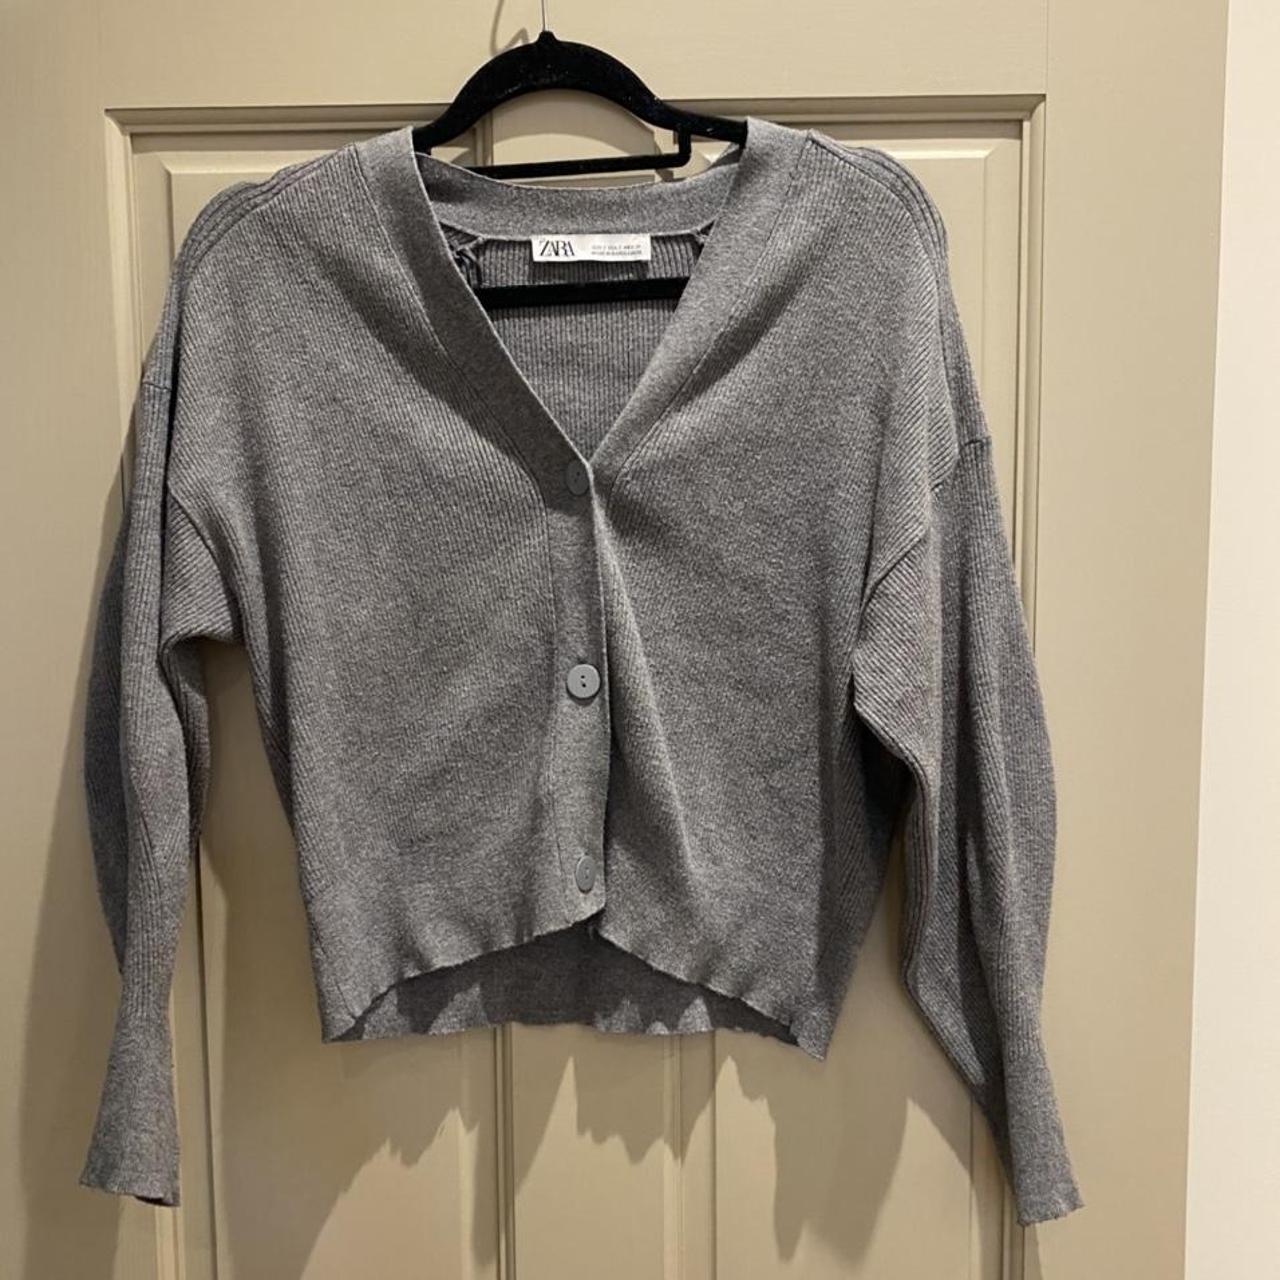 Zara grey basics cardigan #cardigan #grey #zara - Depop